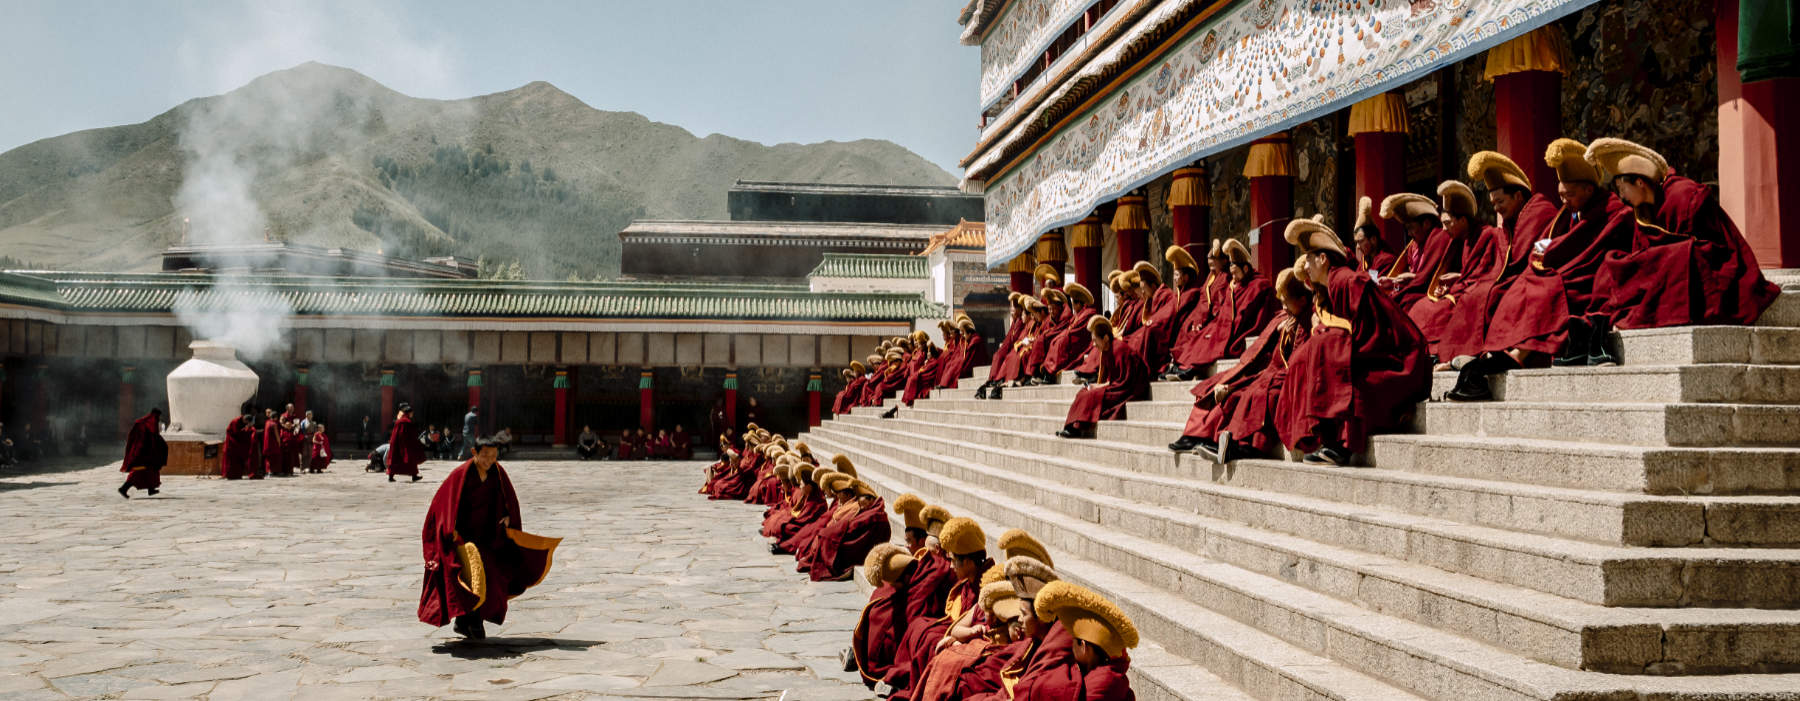 Tibet<br class="hidden-md hidden-lg" /> Travel Bucket List